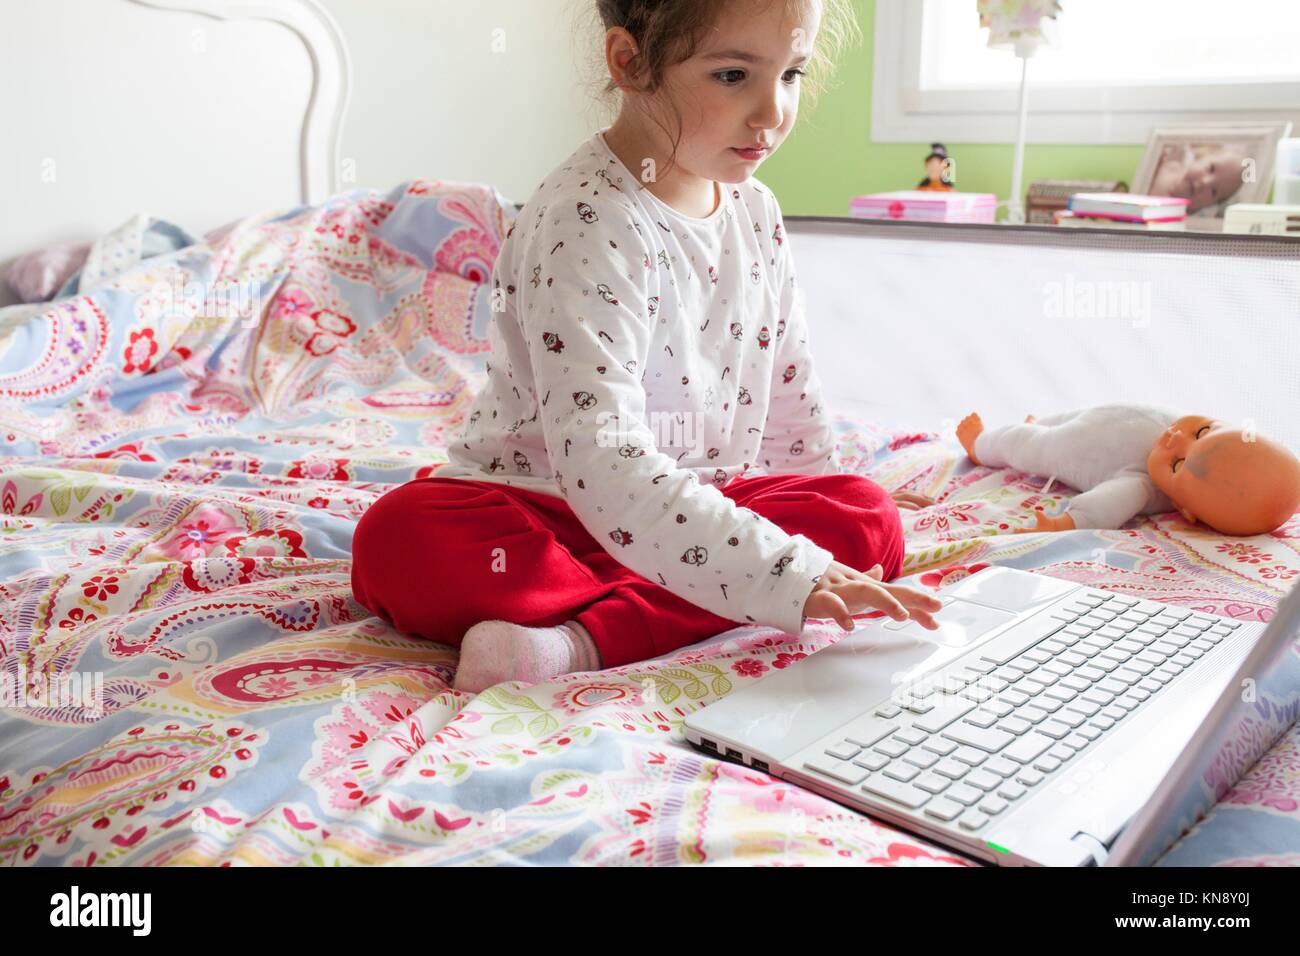 Niña sentada en la cama y navegar por Internet en su habitación. Concepto de control parental. Foto de stock